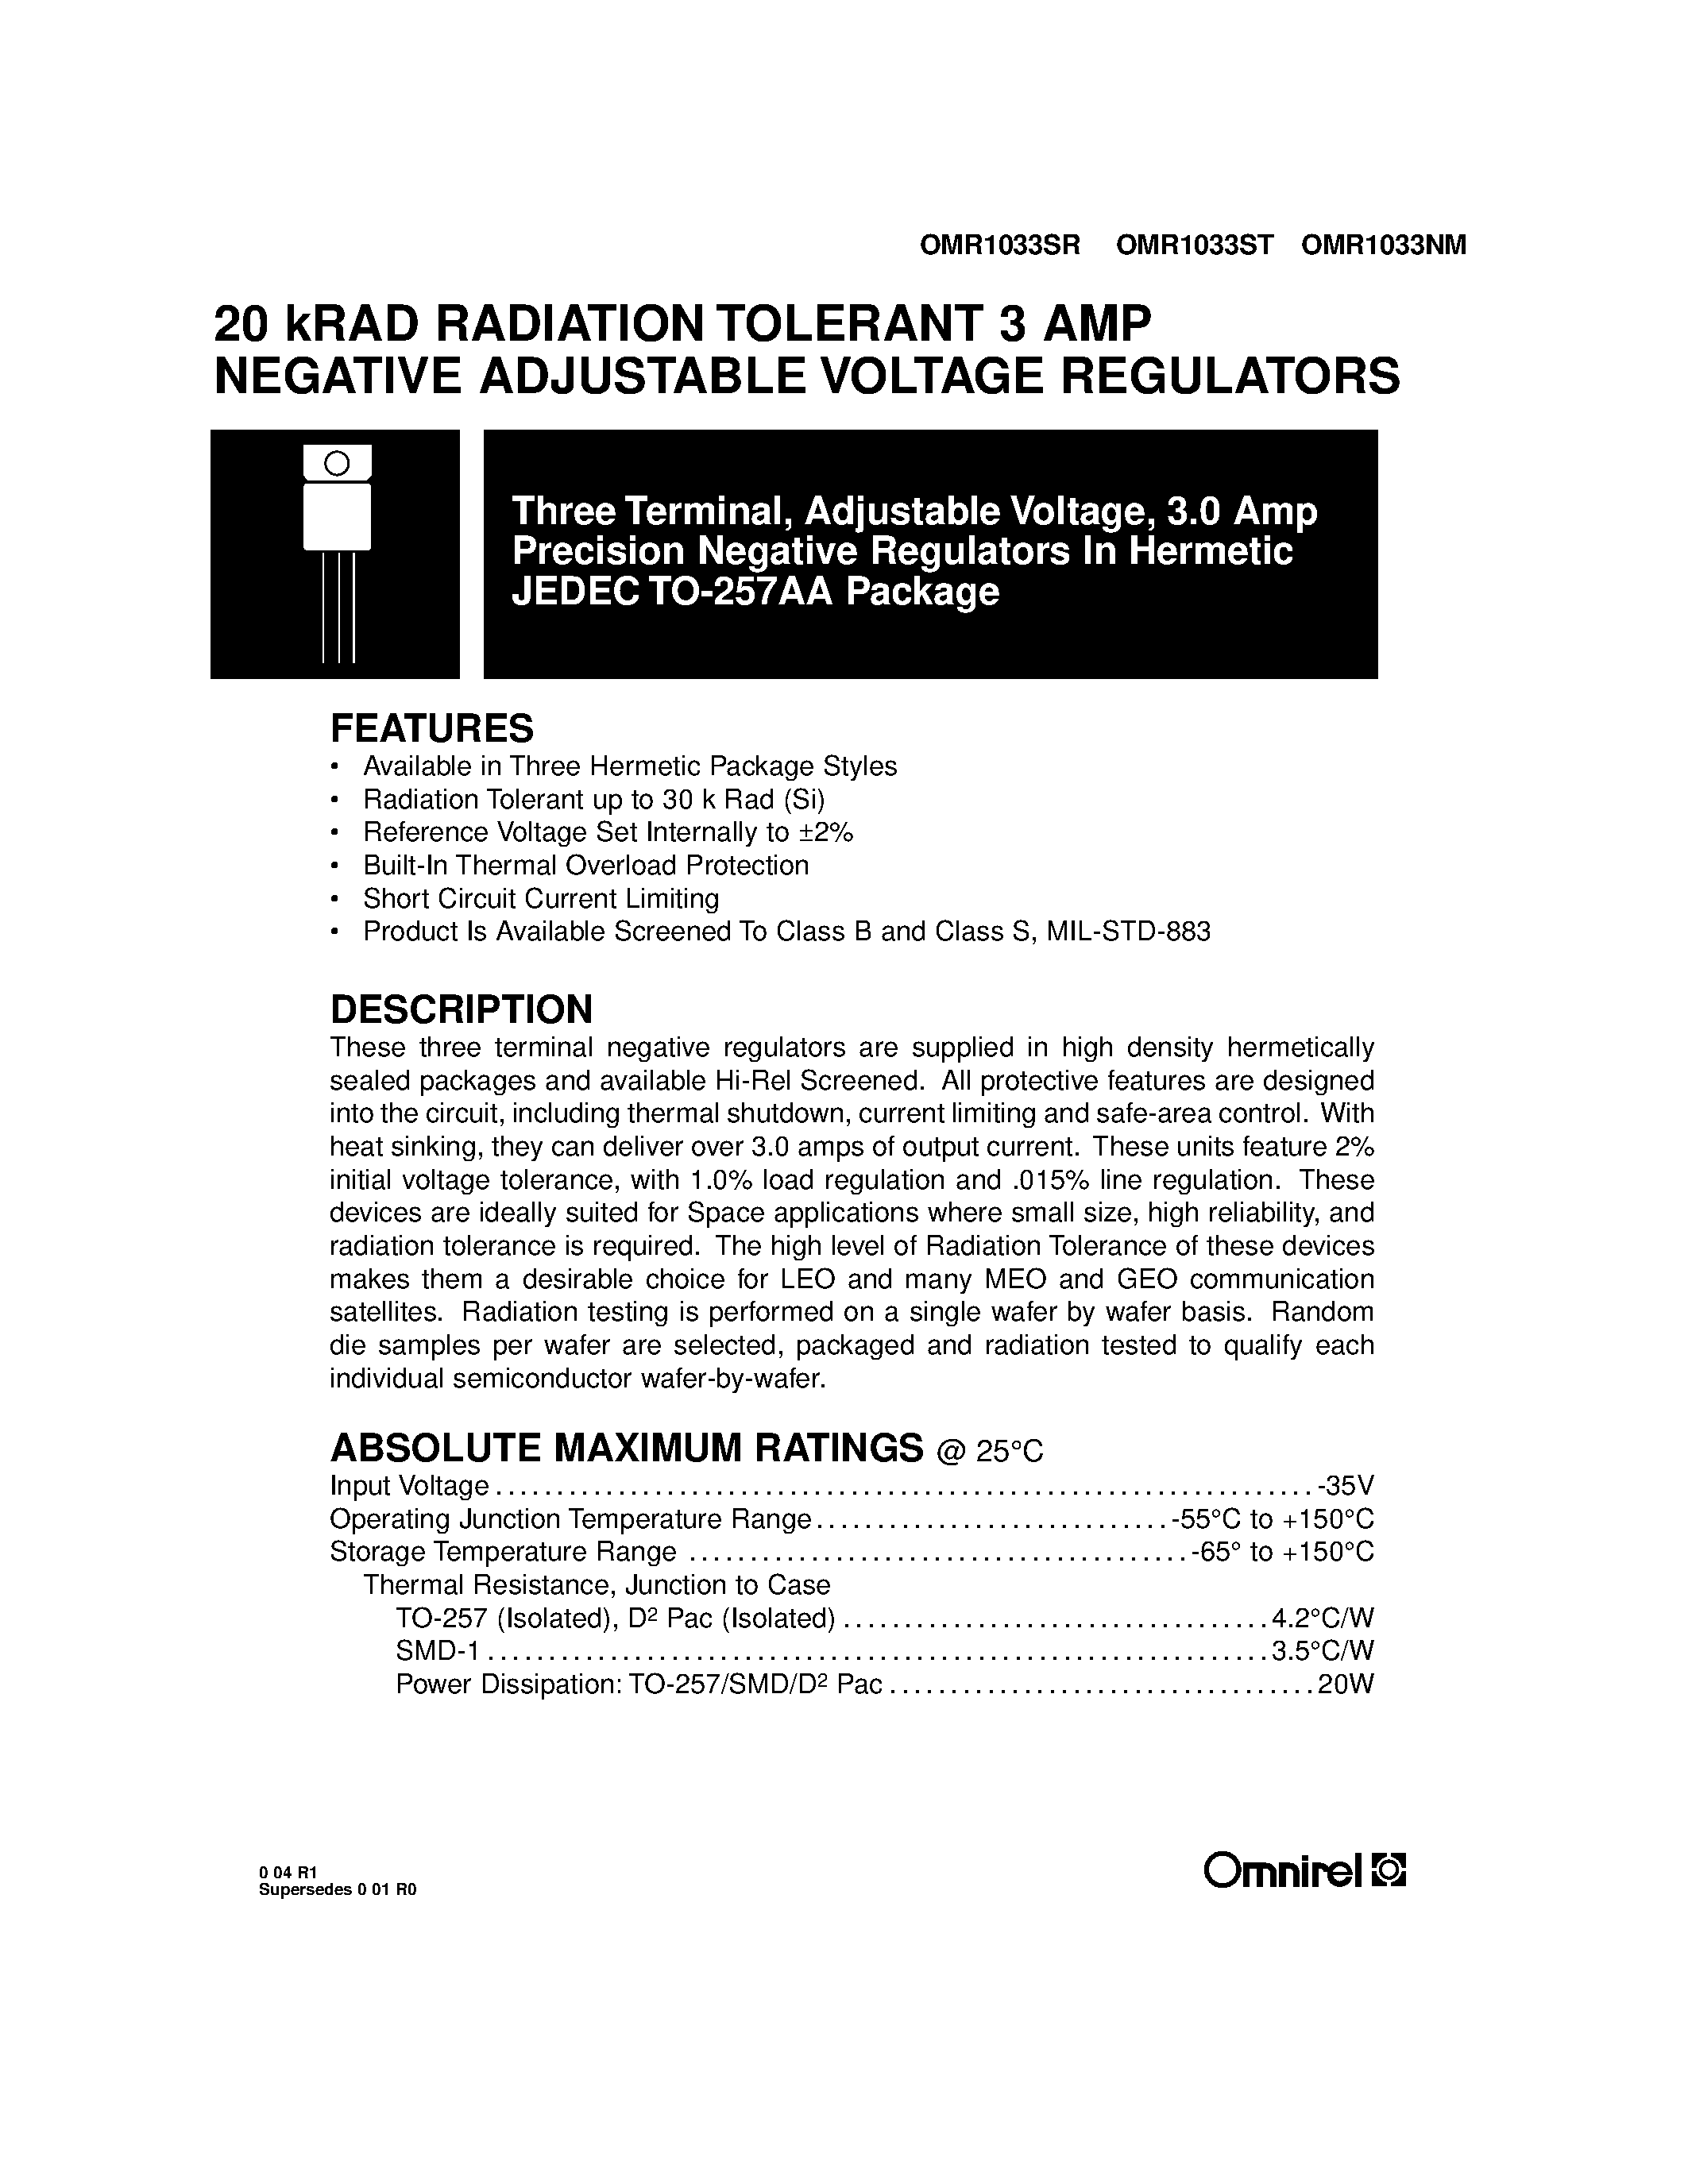 Даташит OMR1033SR - 20 kRAD RADIATION TOLERANT 3 AMP NEGATIVE ADJUSTABLE VOLTAGE REGULATORS страница 1